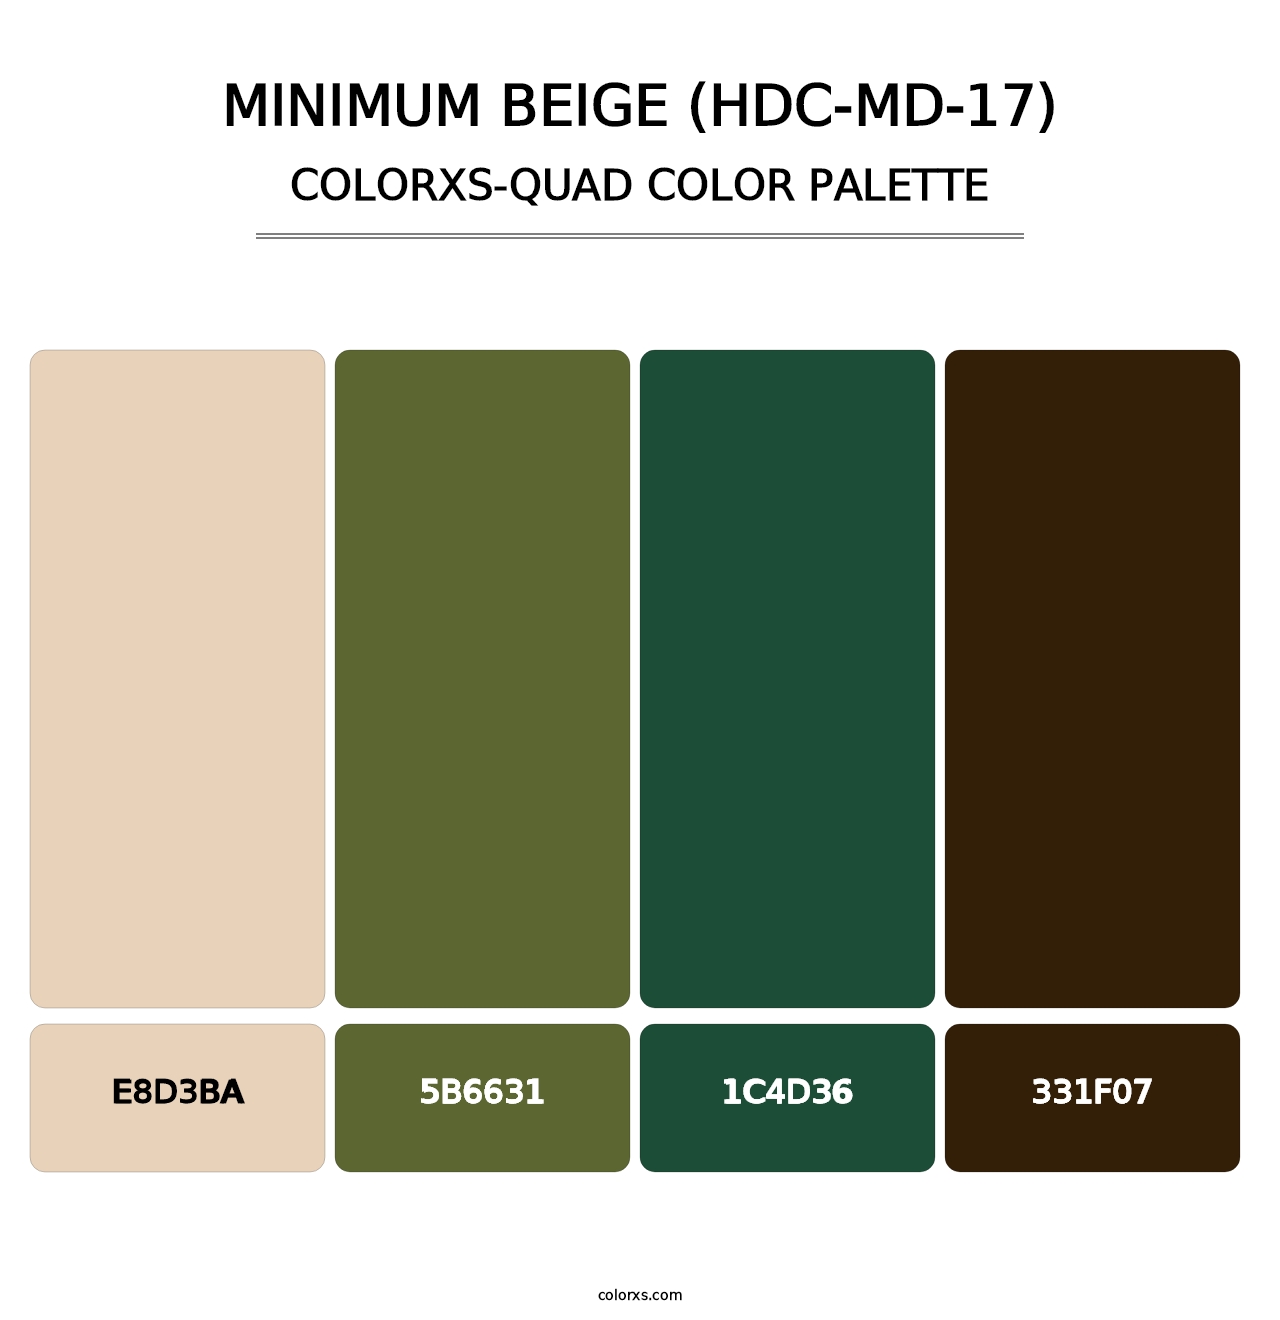 Minimum Beige (HDC-MD-17) - Colorxs Quad Palette